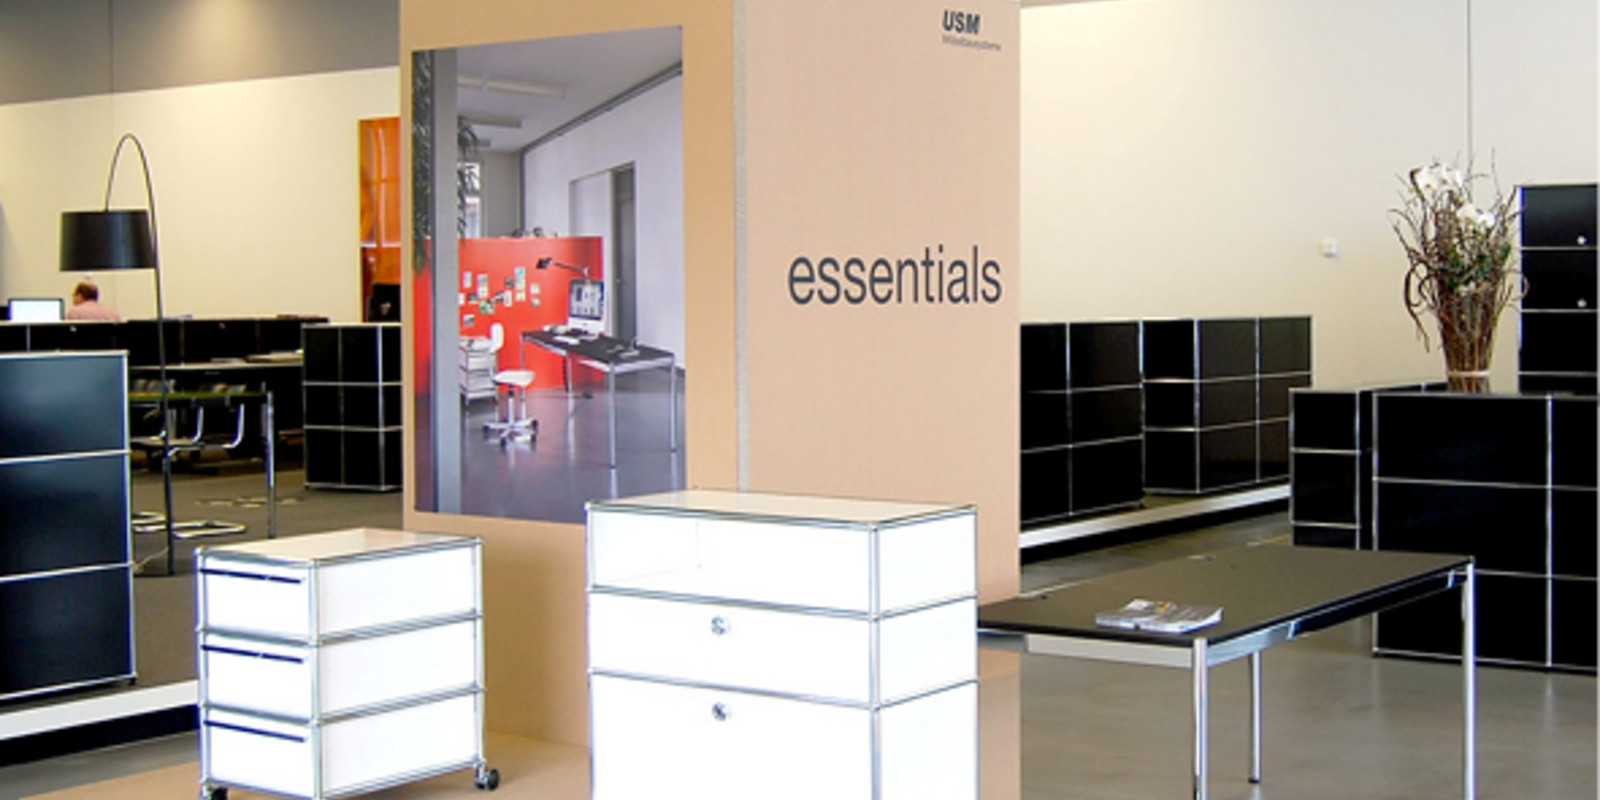 pro office Hannover präsentiert USM Ausstellung «essentials» 2012 Bild 0